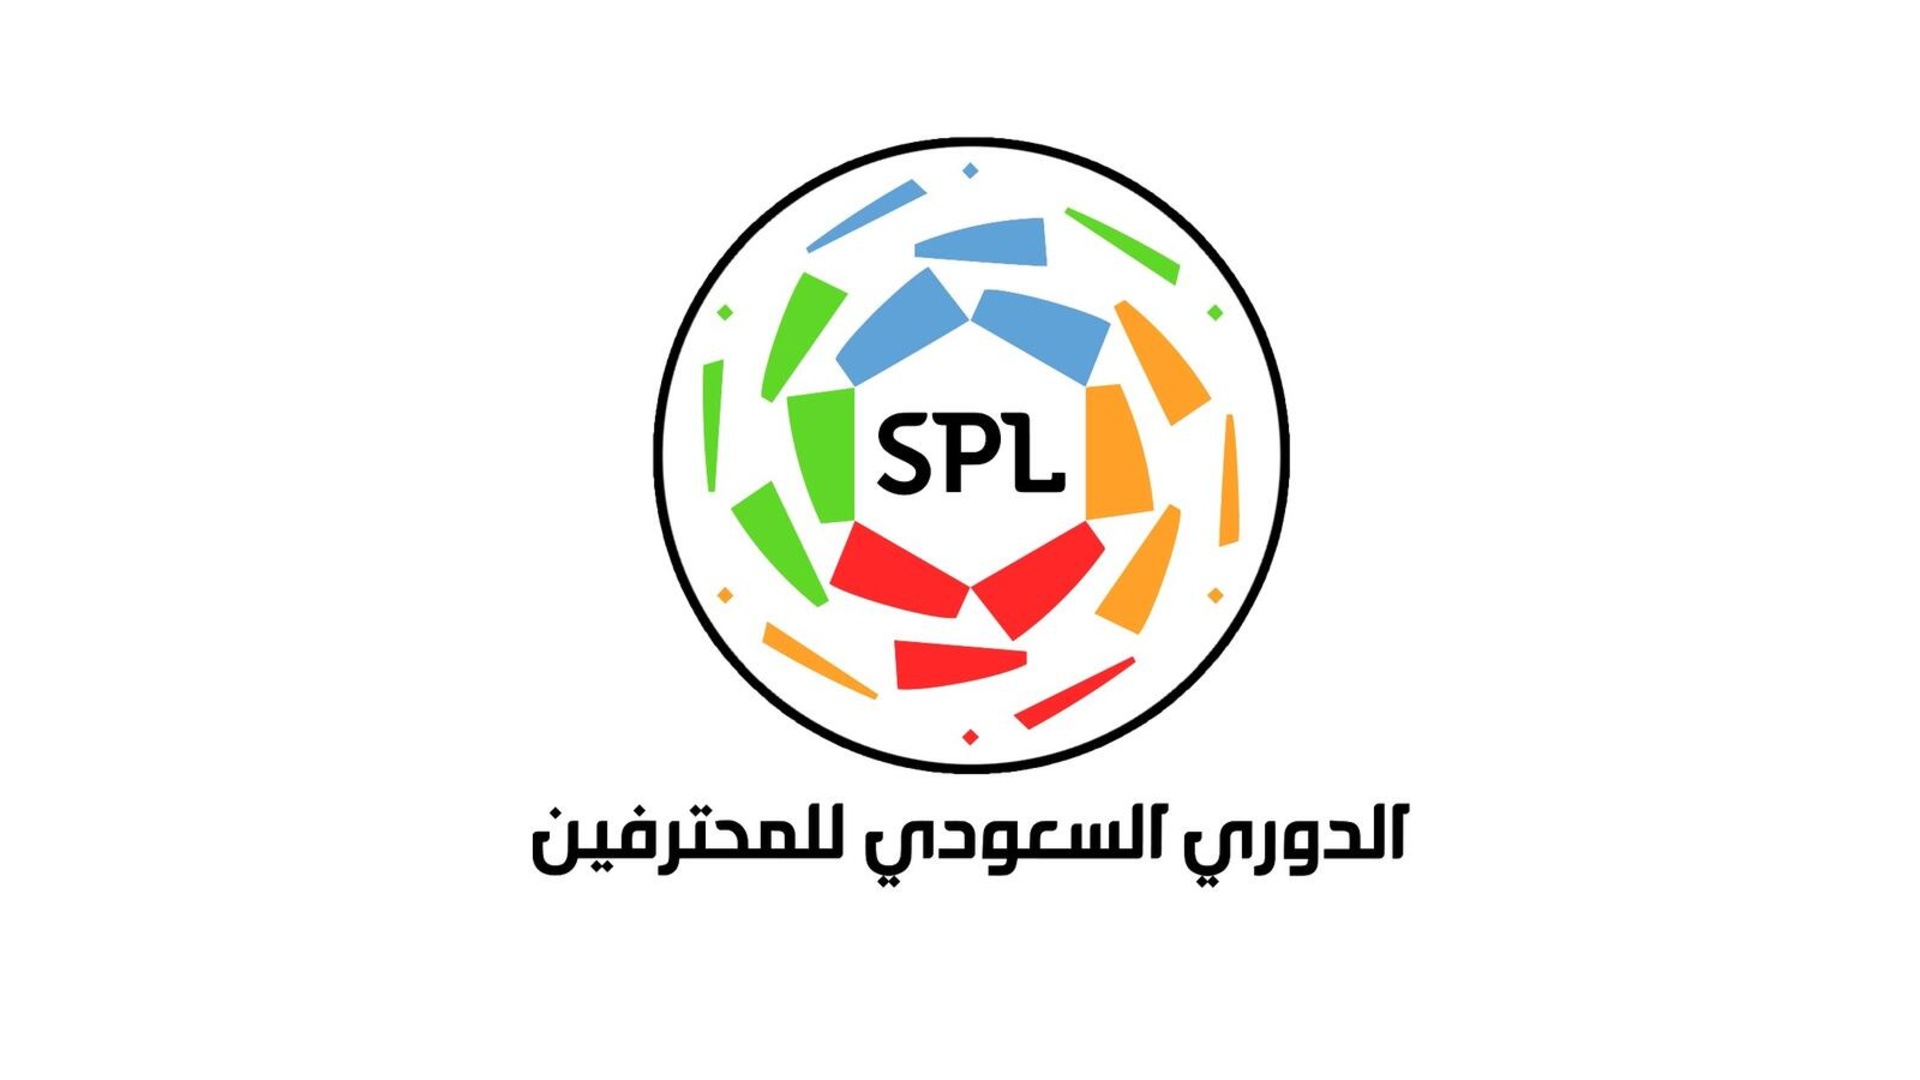 ملخص نتيجة مباراة الاتحاد والهلال في الدوري السعودي وحسم الكلاسيكو السعودي